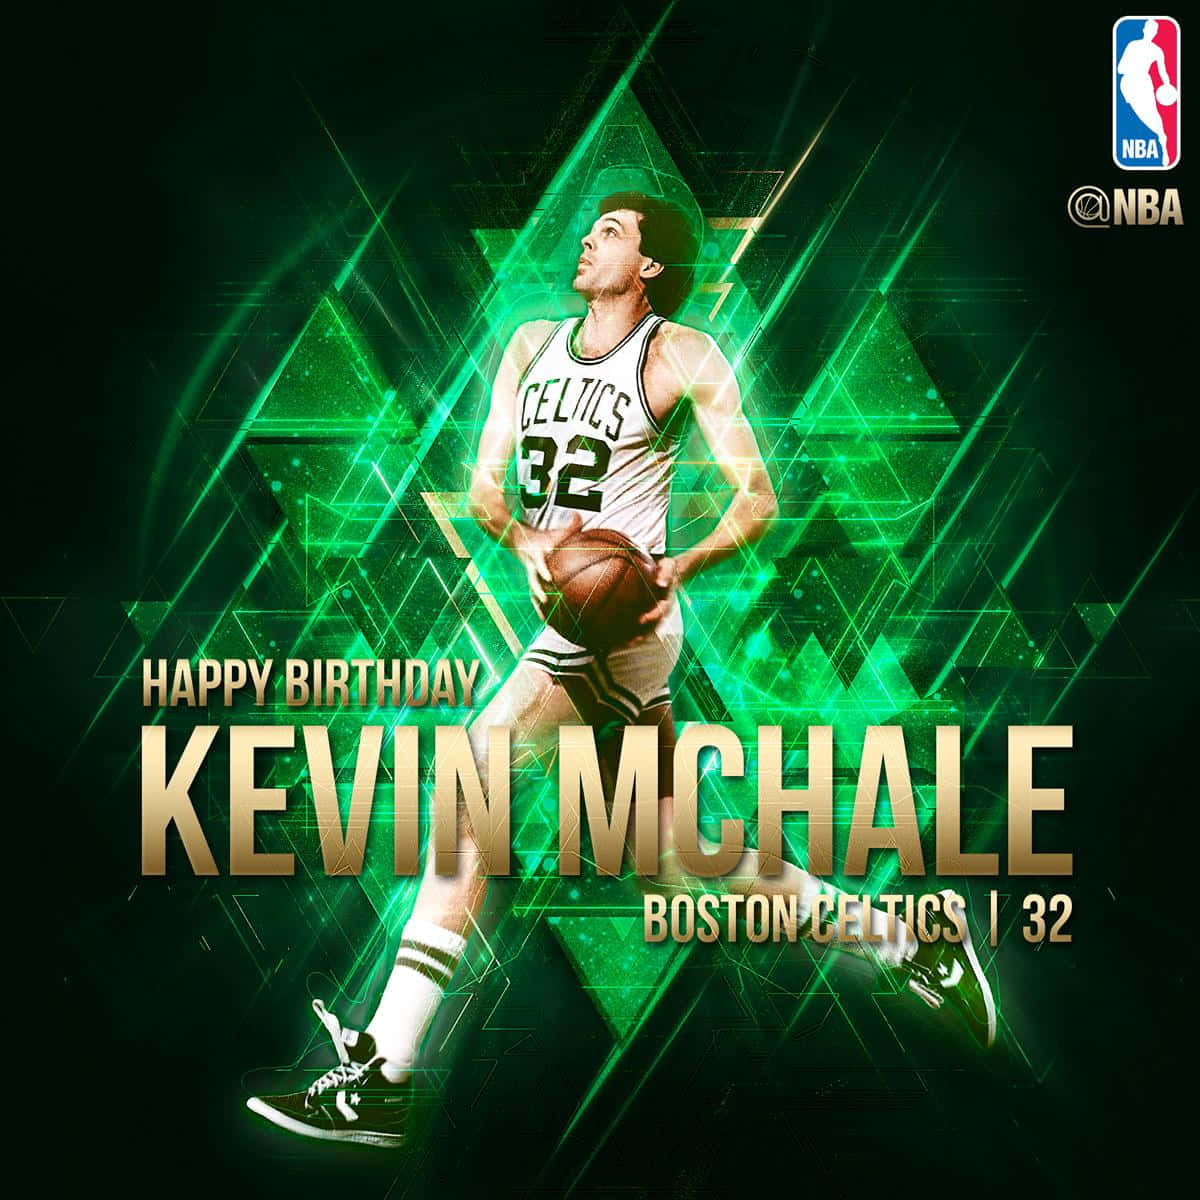 Kevinmchale Boston Celtics Nba Poster Di Compleanno Sfondo